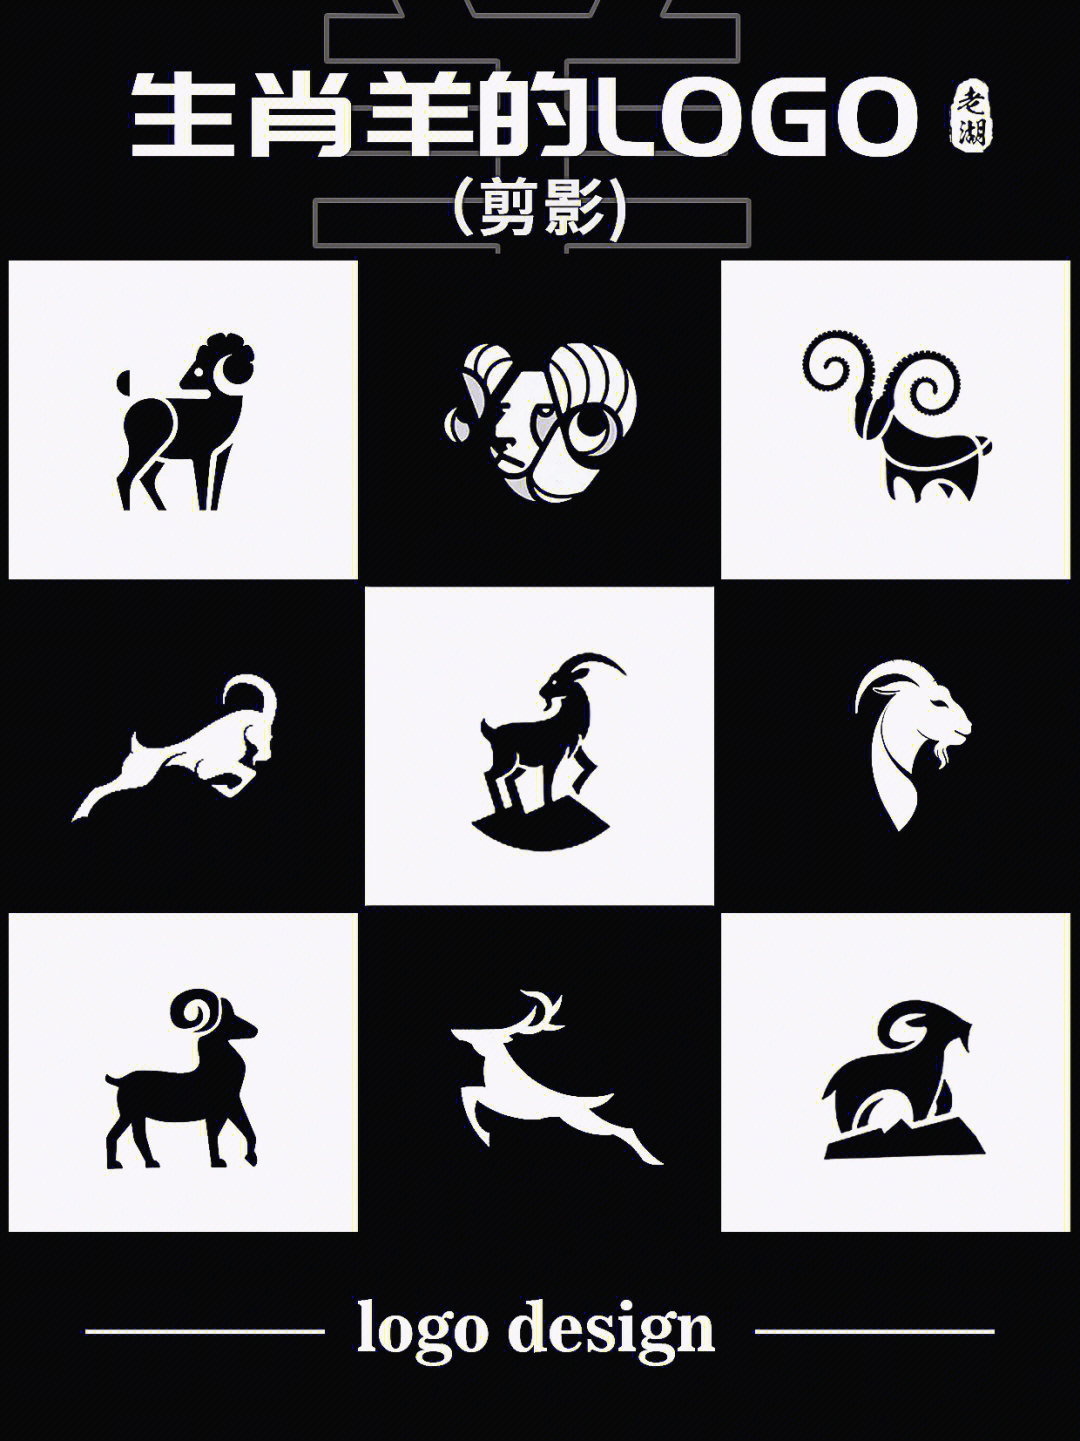 七只羊logo图片